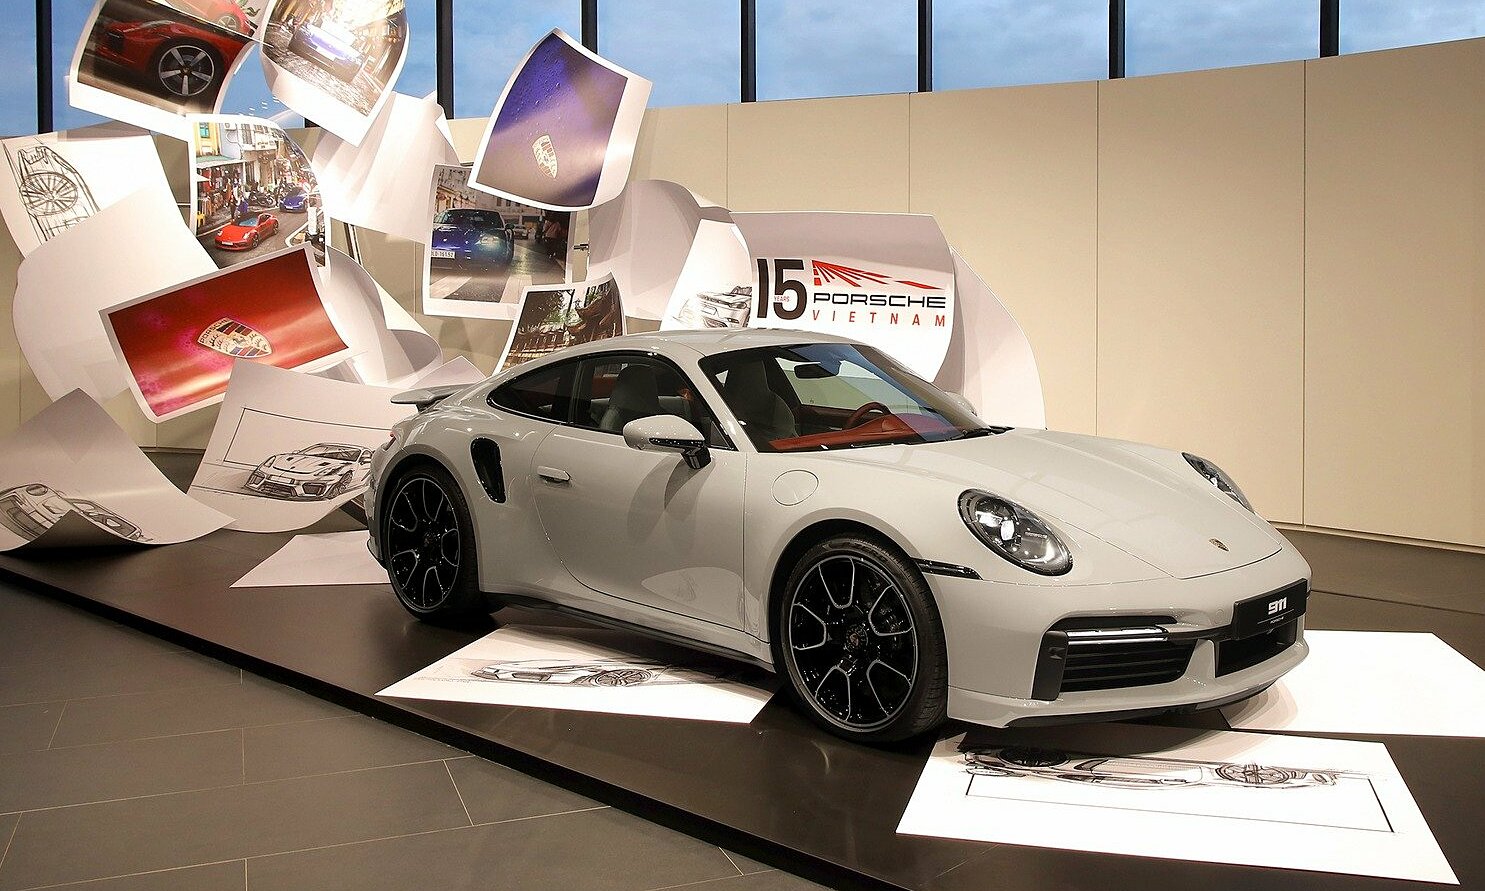 Một chiếc Porsche 911 tại showroom của hãng ở Sài Gòn. Ảnh: Phạm Trung